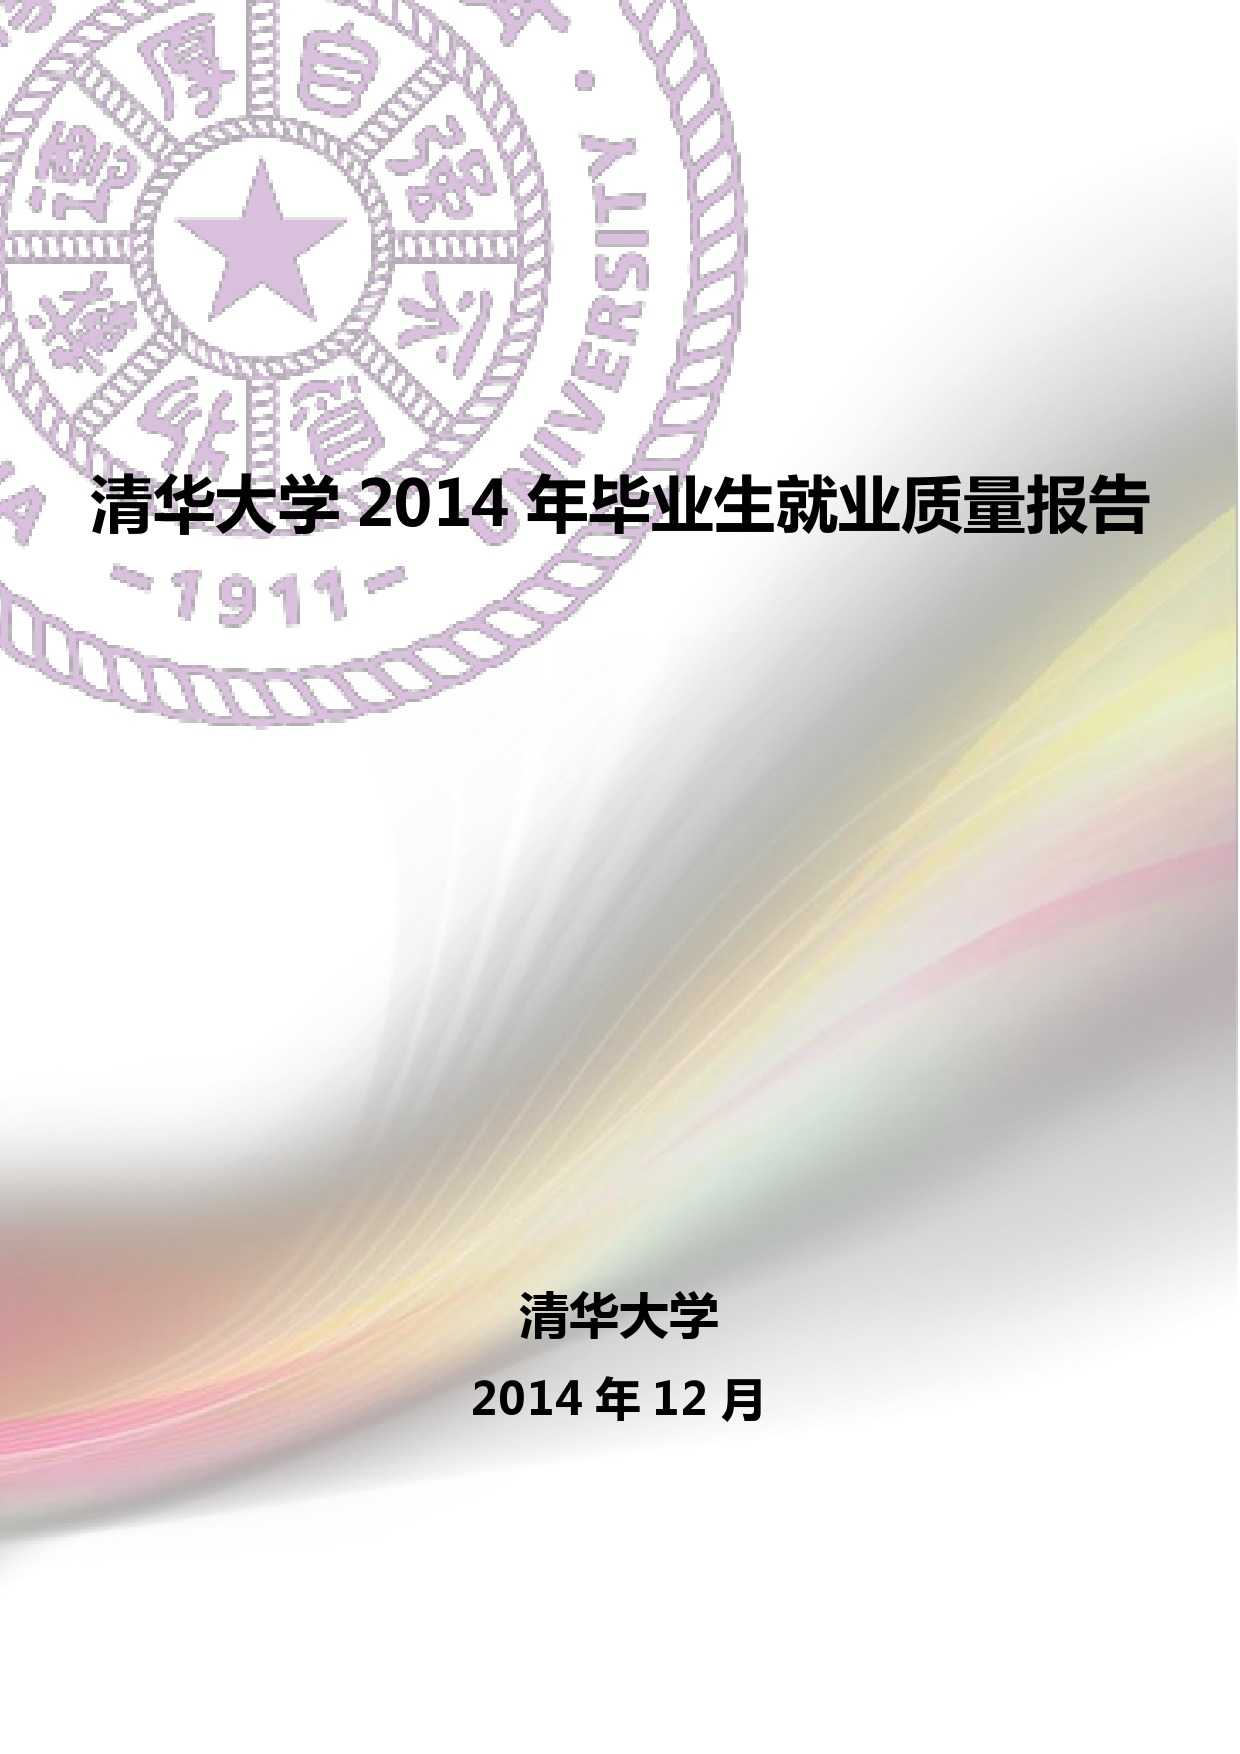 清華大學2014 年畢業生就業質量報告_000001